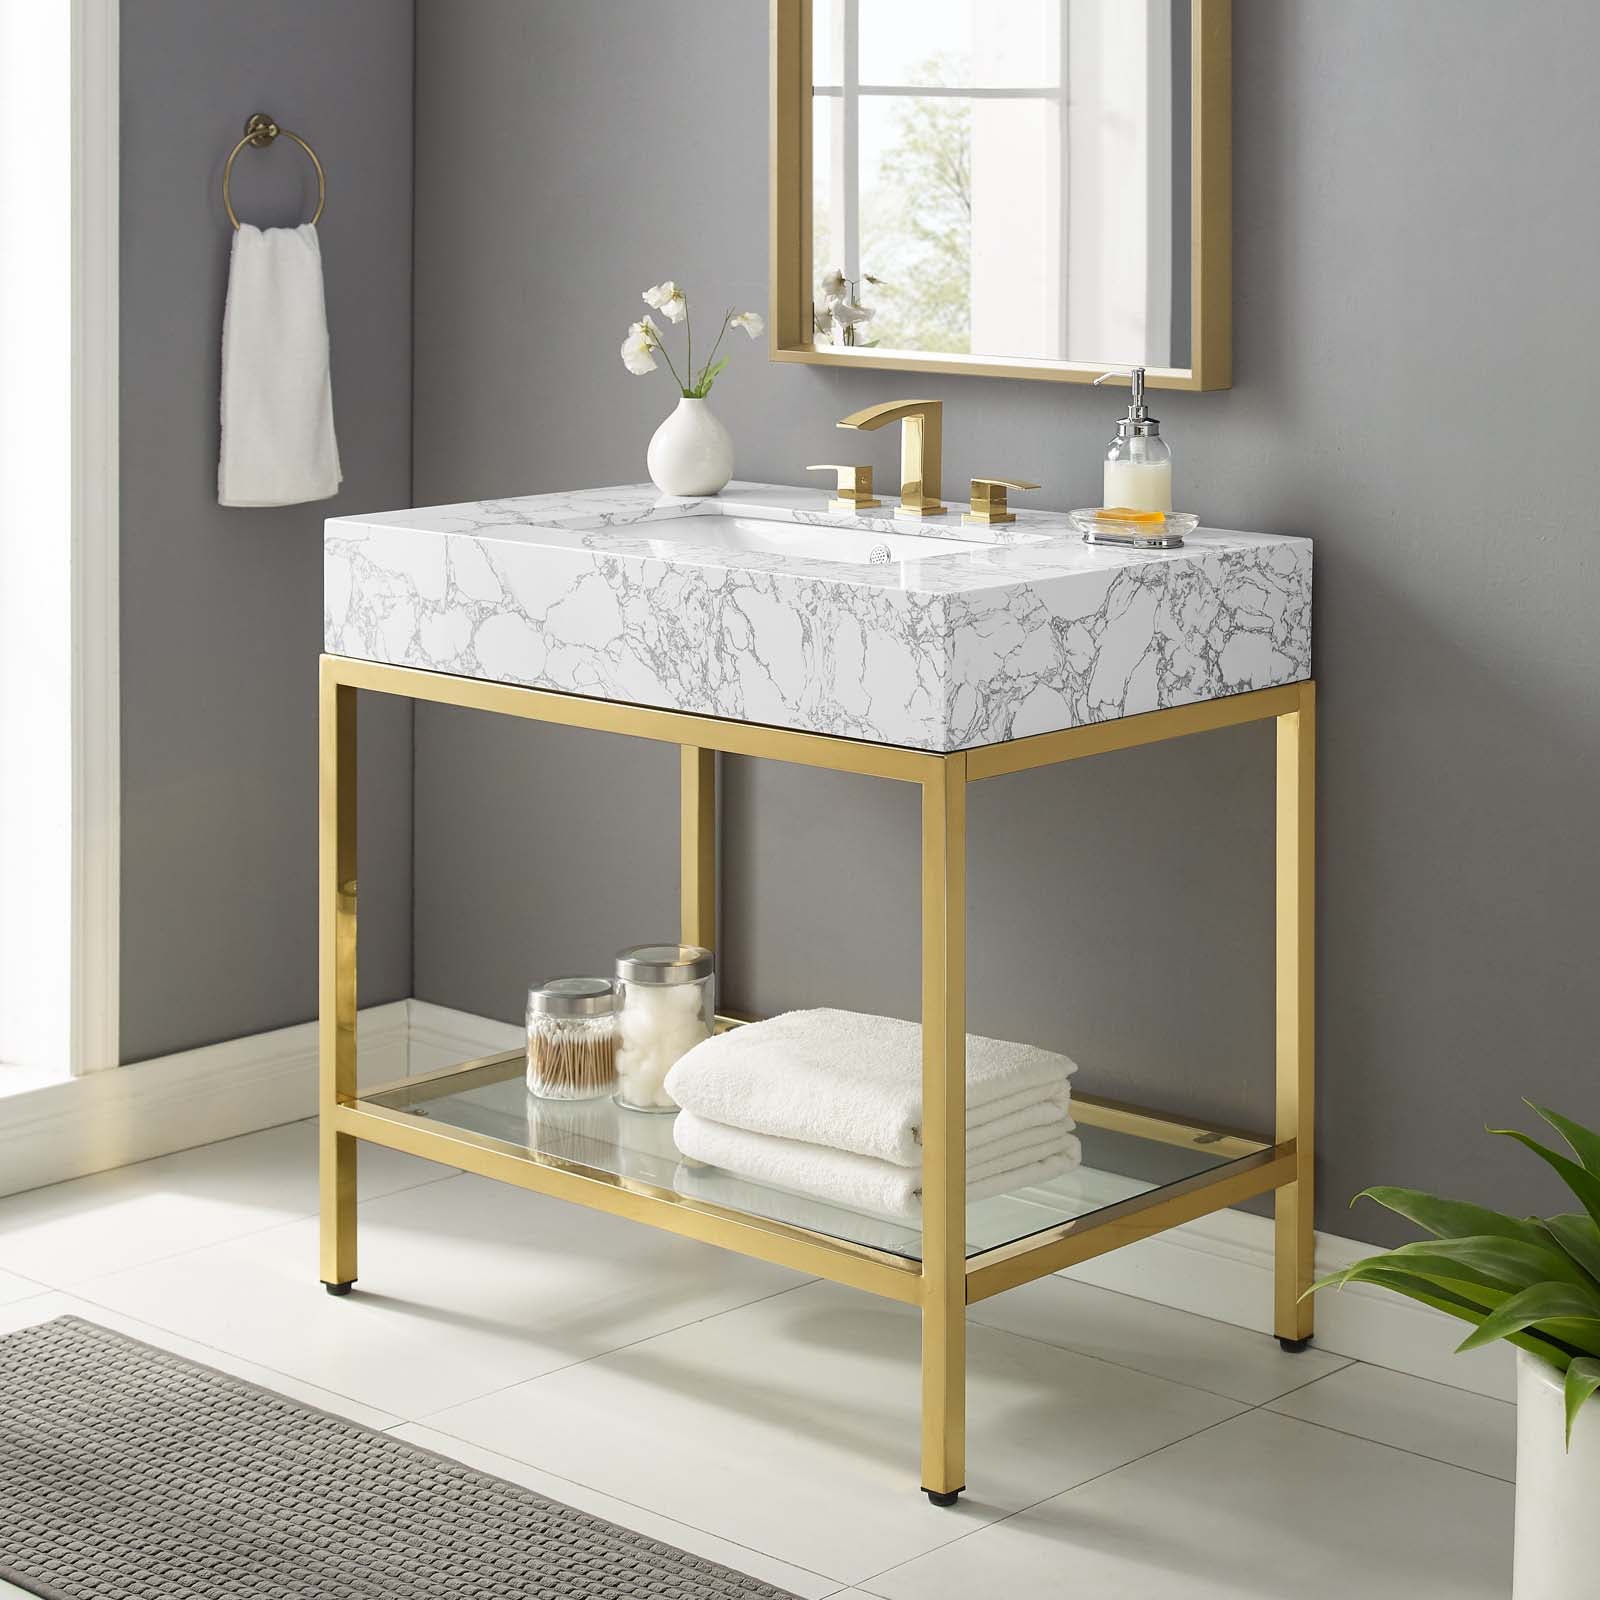 Kingsley 36" Gold Stainless Steel Bathroom Vanity - East Shore Modern Home Furnishings